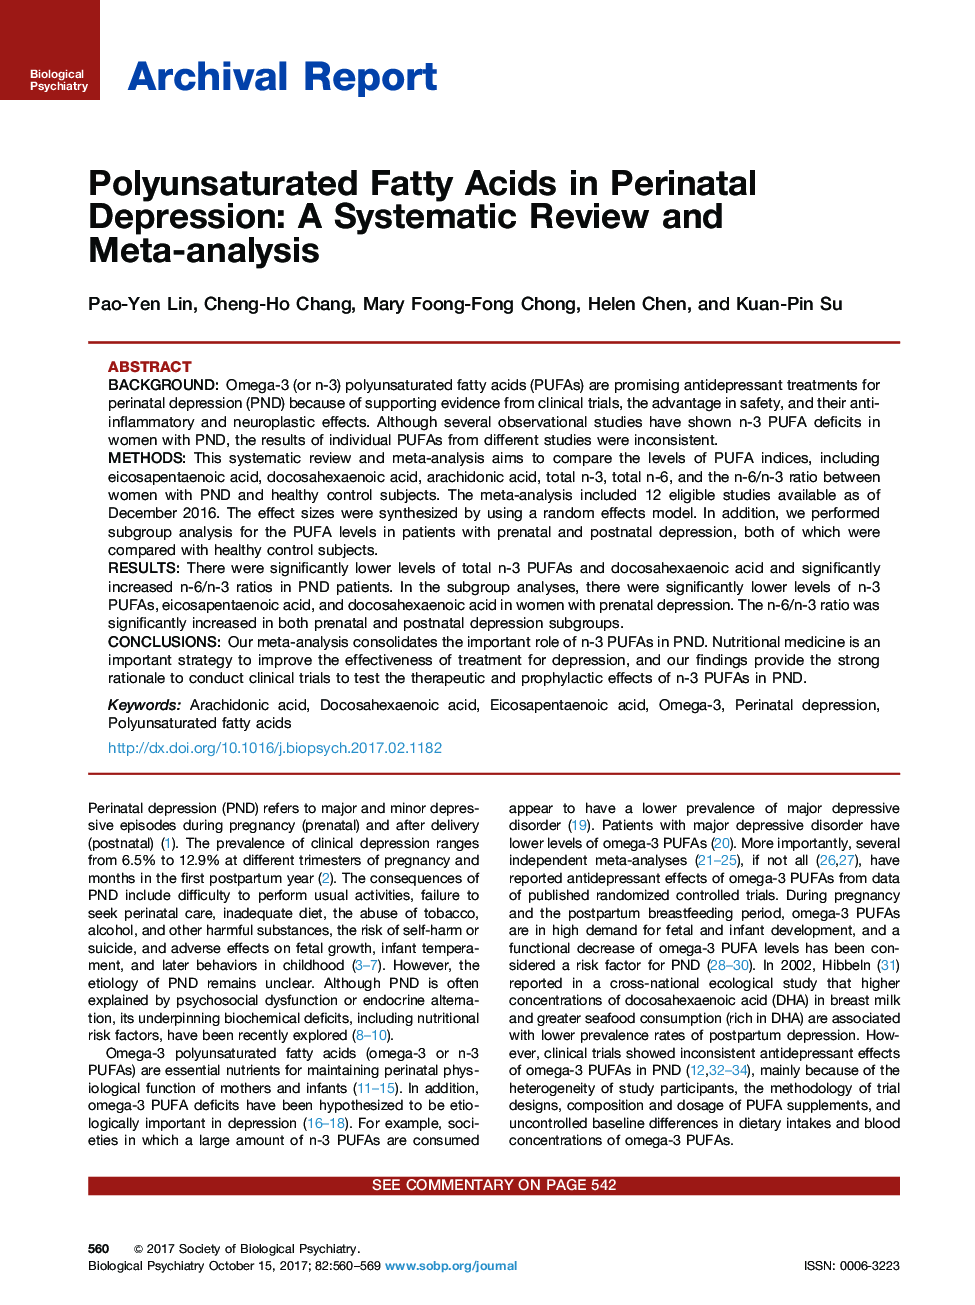 گزارش آرشیو اسیدهای چرب اشباع نشده در افسردگی پرناتال: یک بررسی منظم و متاآنالیز 